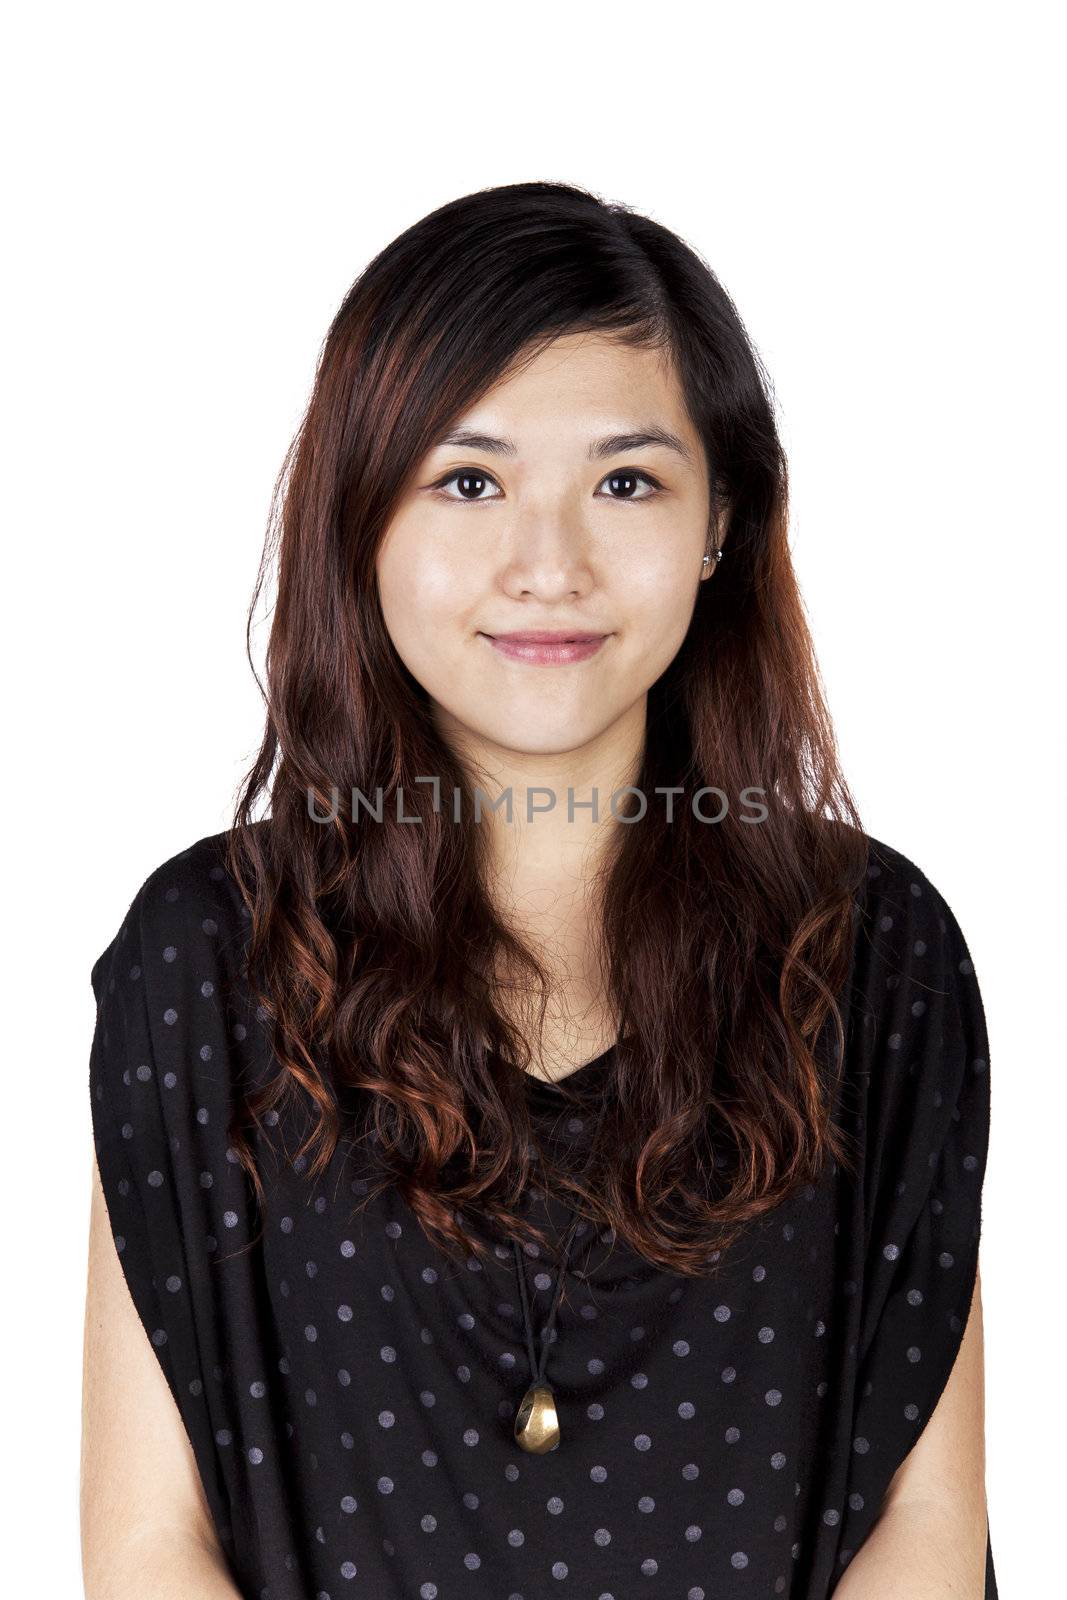 Beautiful asian woman on white background